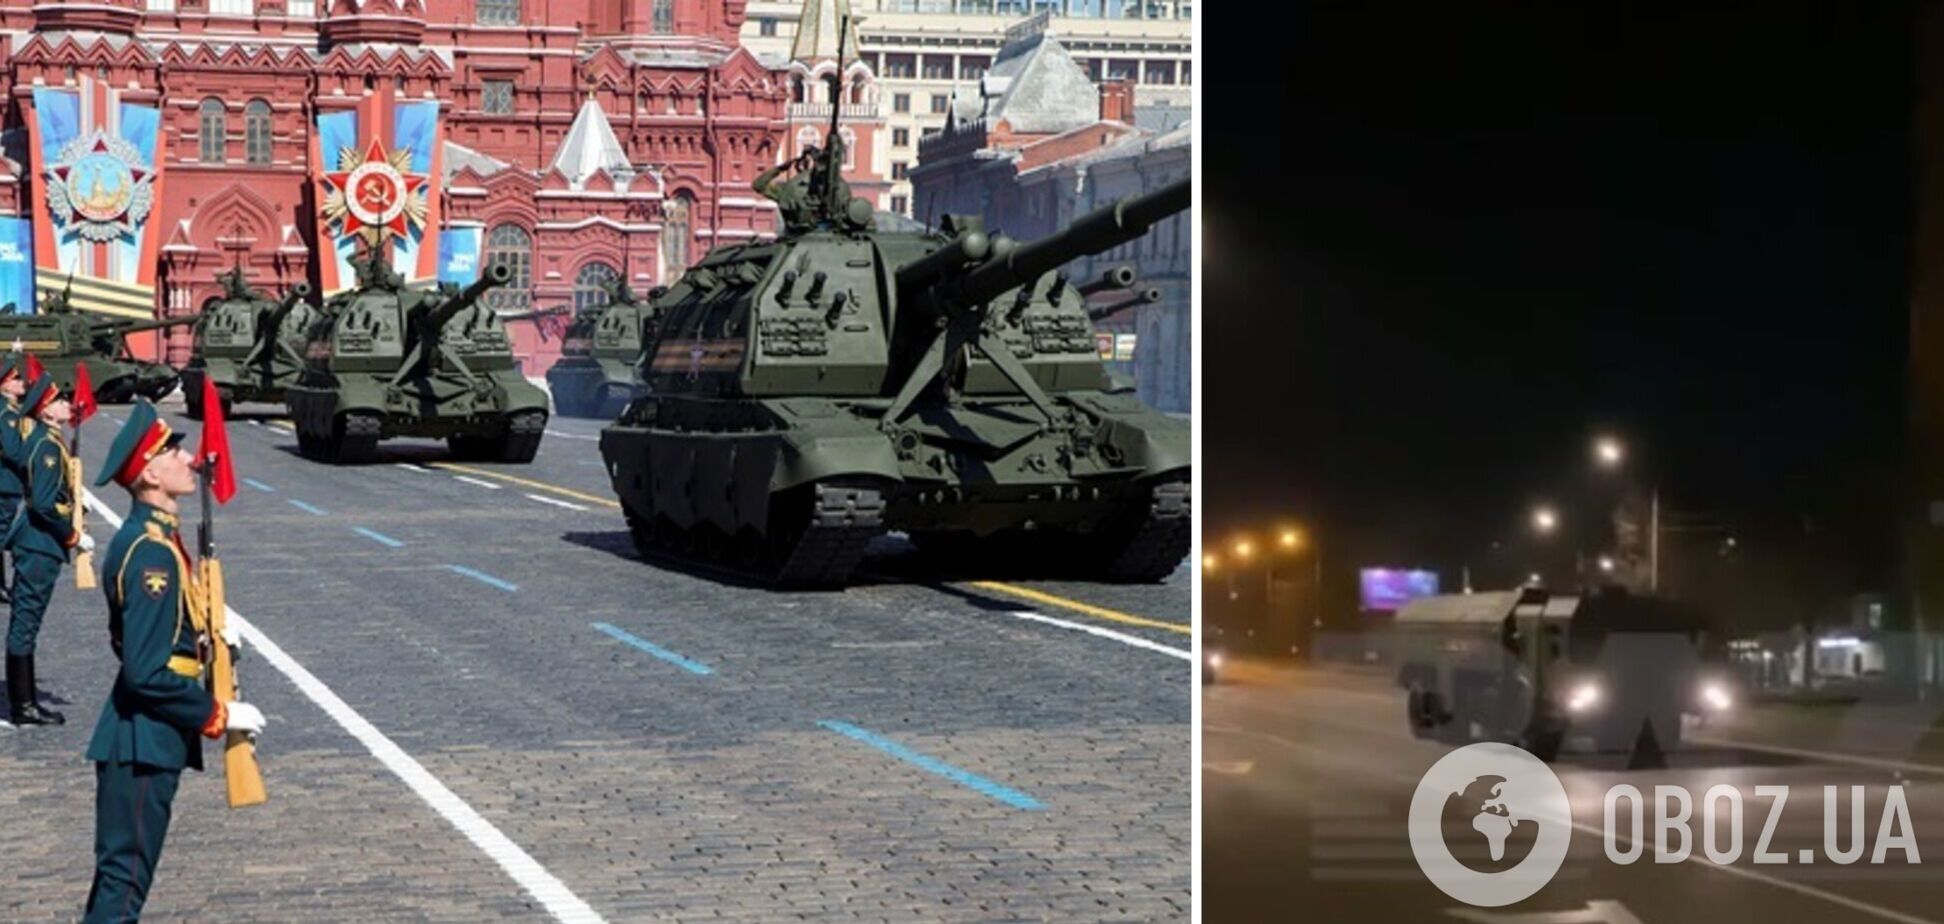 Зафиксировали колонну военной техники: в Москве начали готовиться к параду 9 мая. Видео